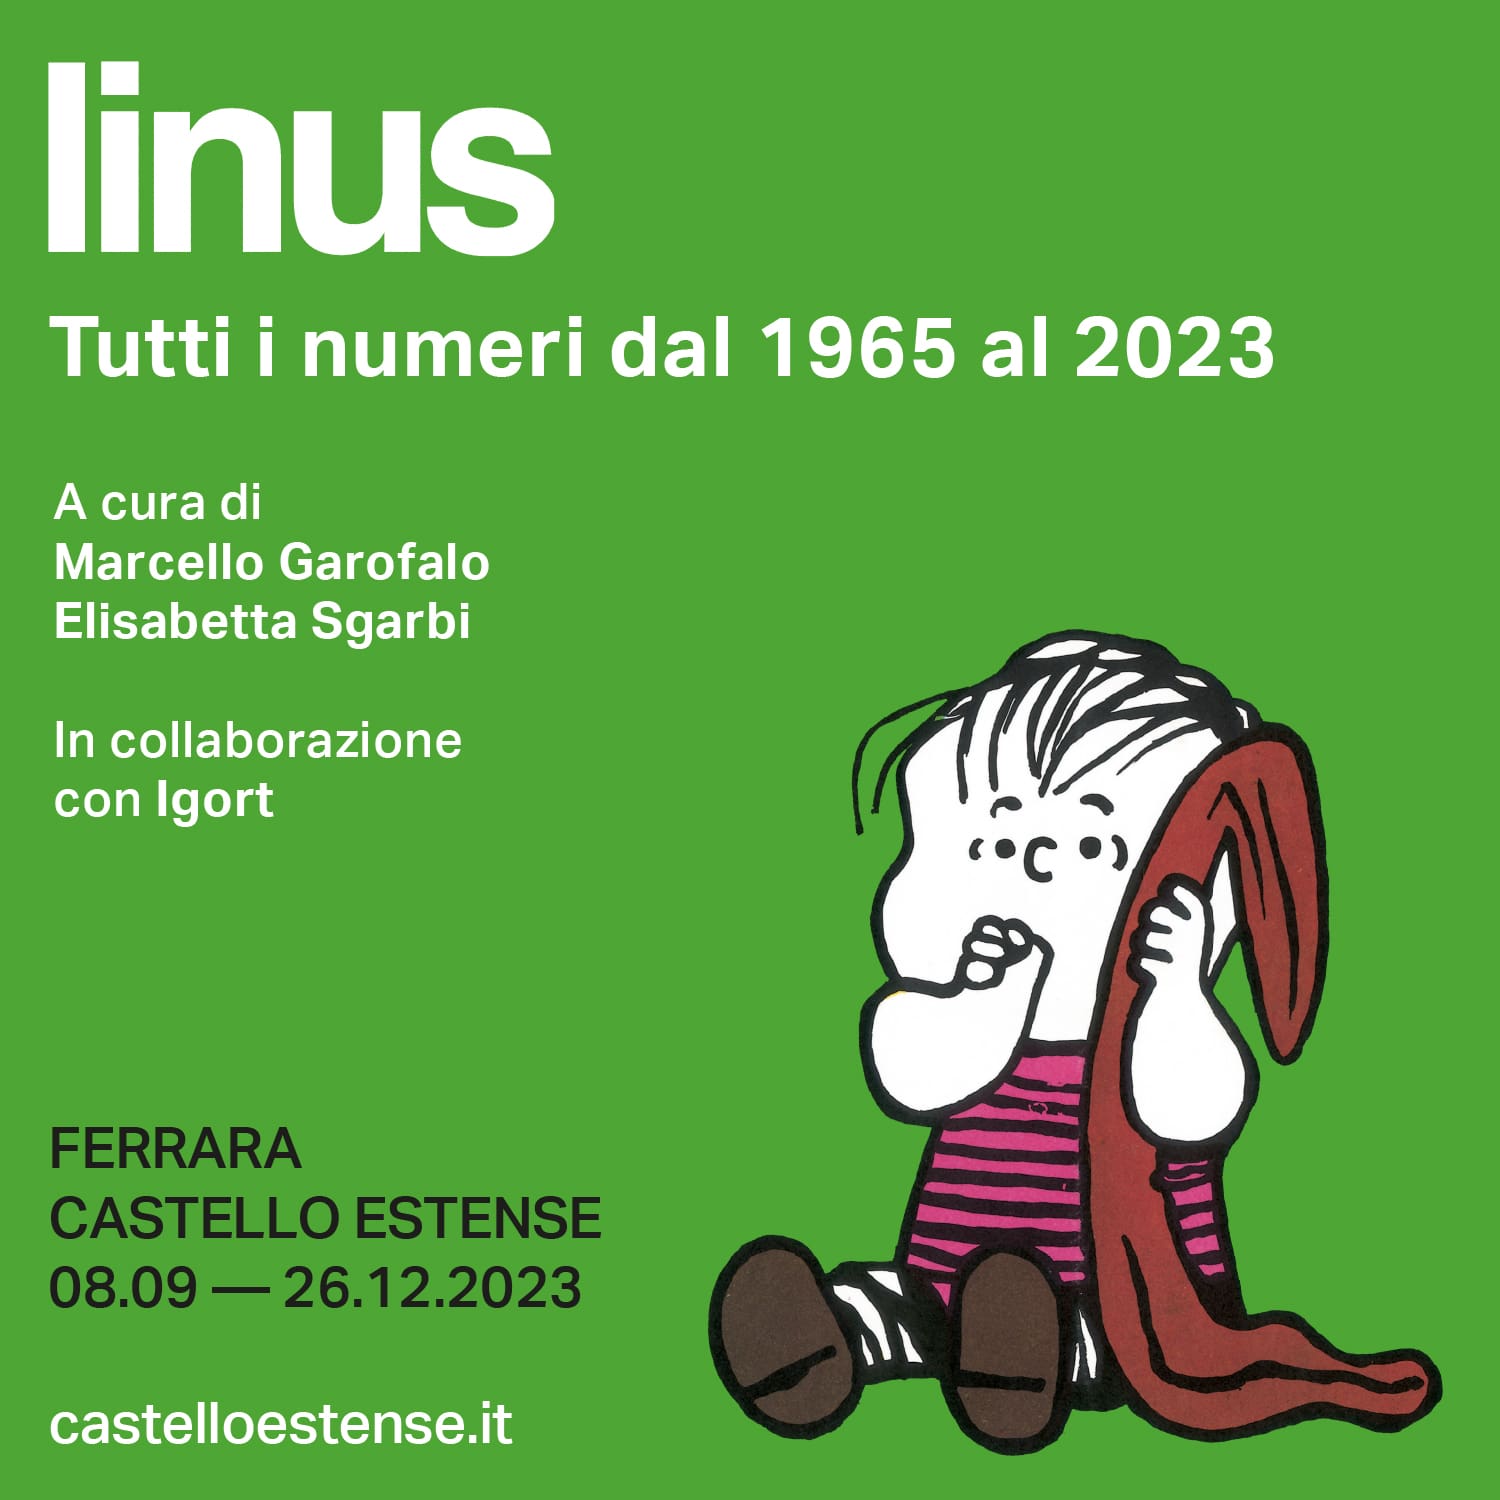 Mostra eccezionale a Ferrara: tutti i 700 numeri della rivista Linus dal 1965 al 2023. Per ricordare o scoprire Charles M. Schulz!